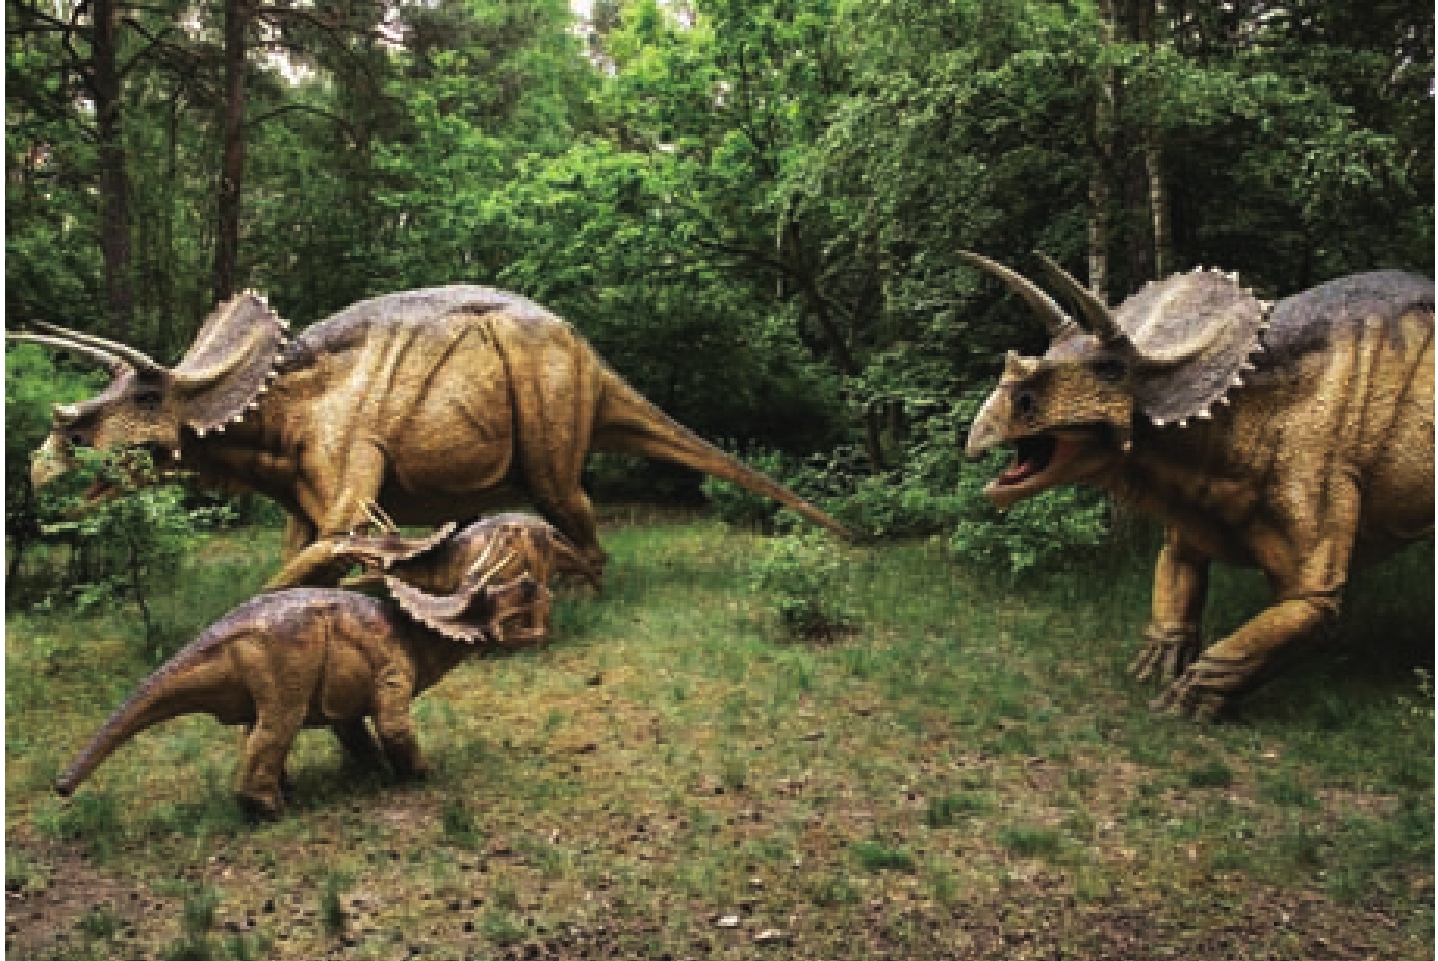 世界上保存最完整的三角龙化石Horridus - 神秘的地球 科学|自然|地理|探索